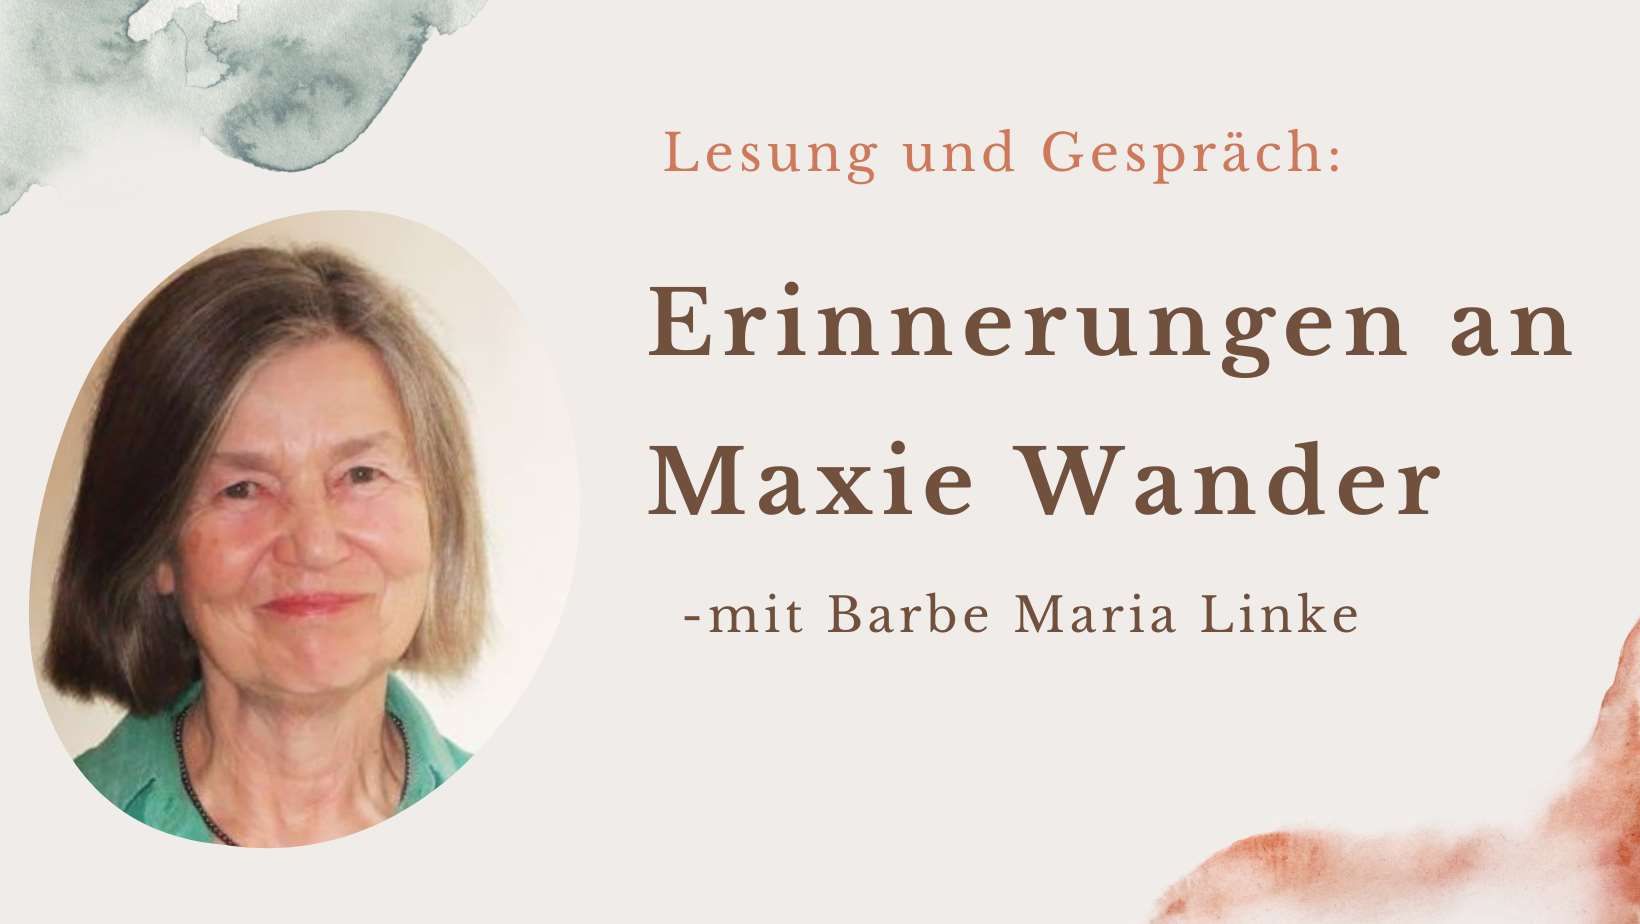 Lesung: Erinnerungen an Maxie Wander  - mit Barbe Maria Linke